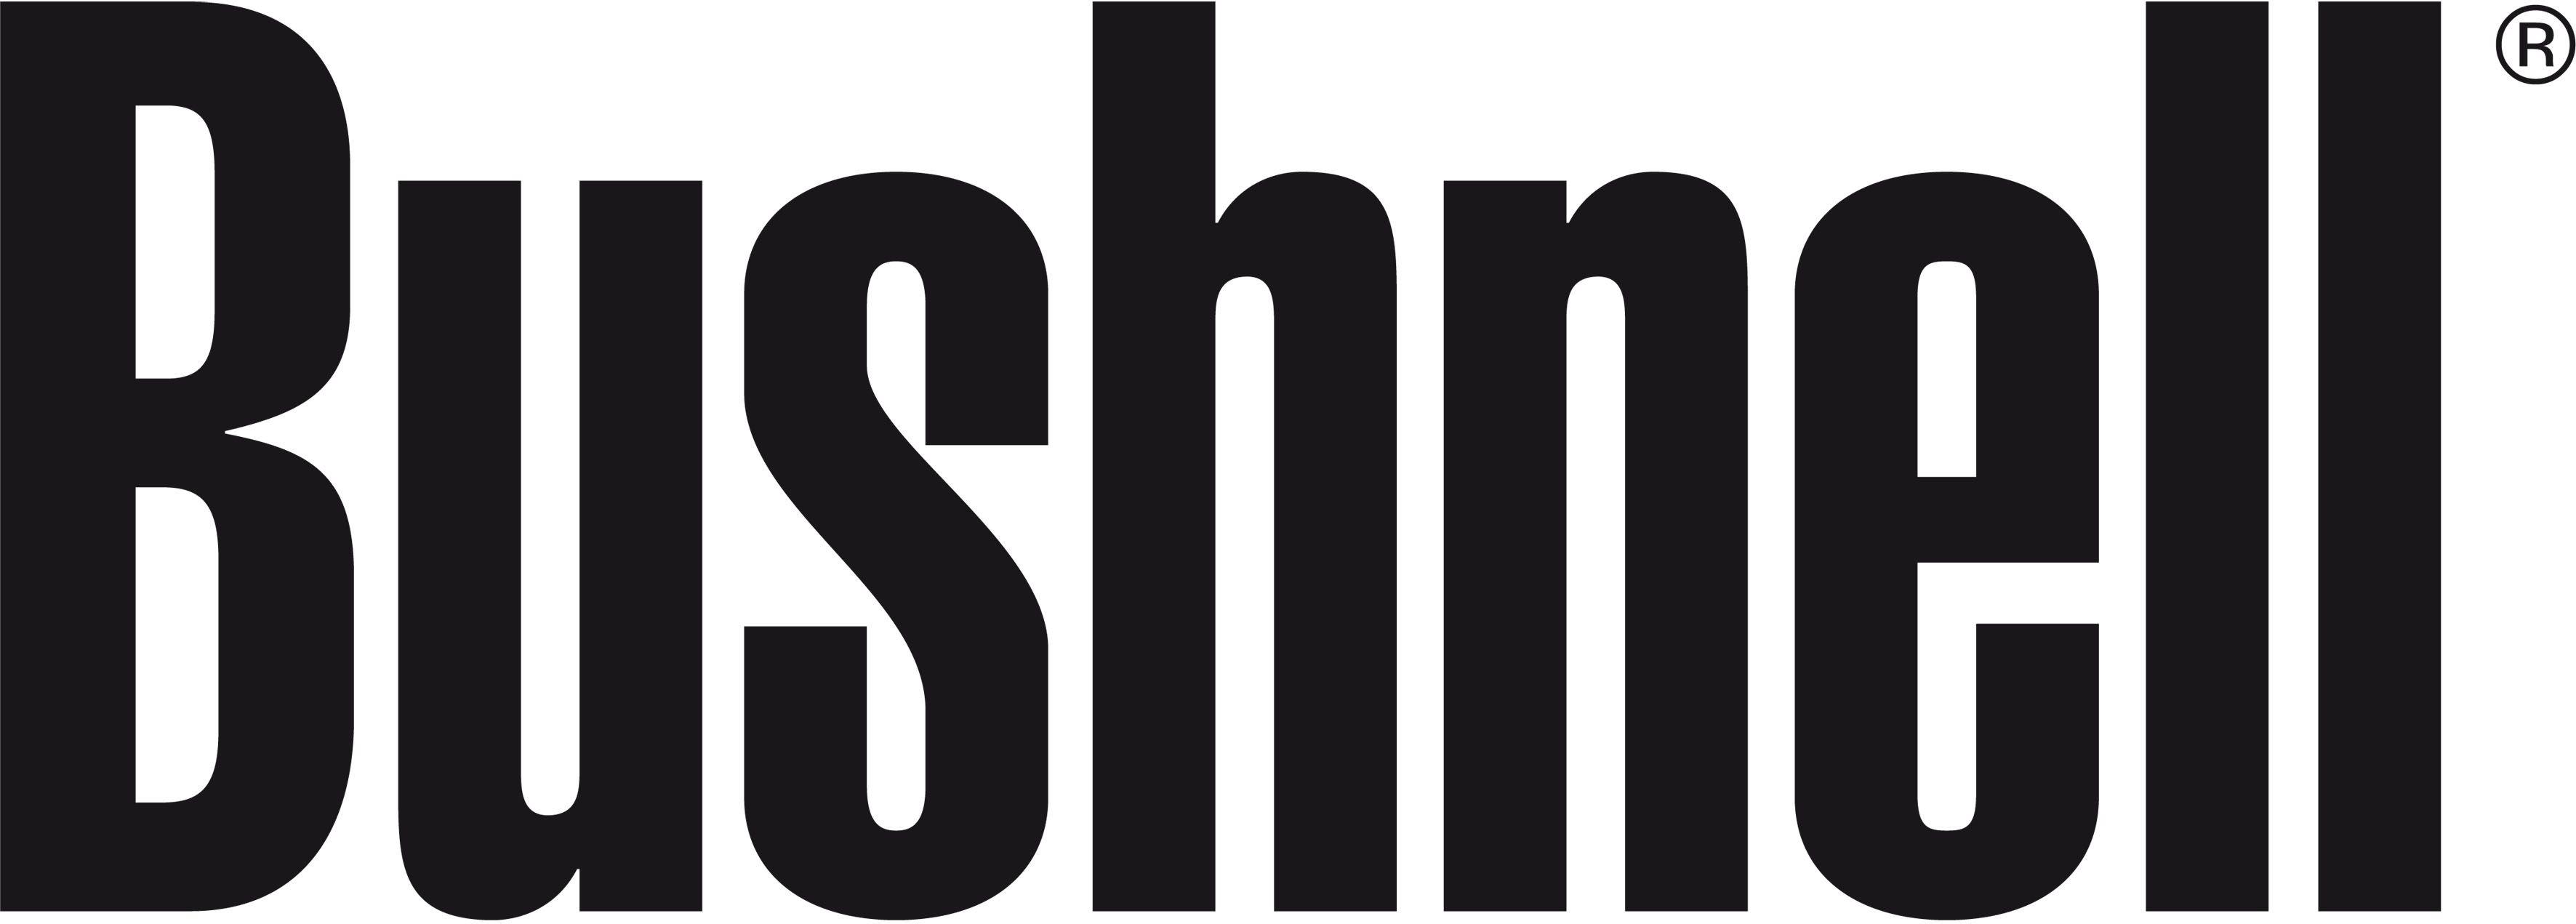 Bushnell Logo - Bushnell brand logo - Birdfair